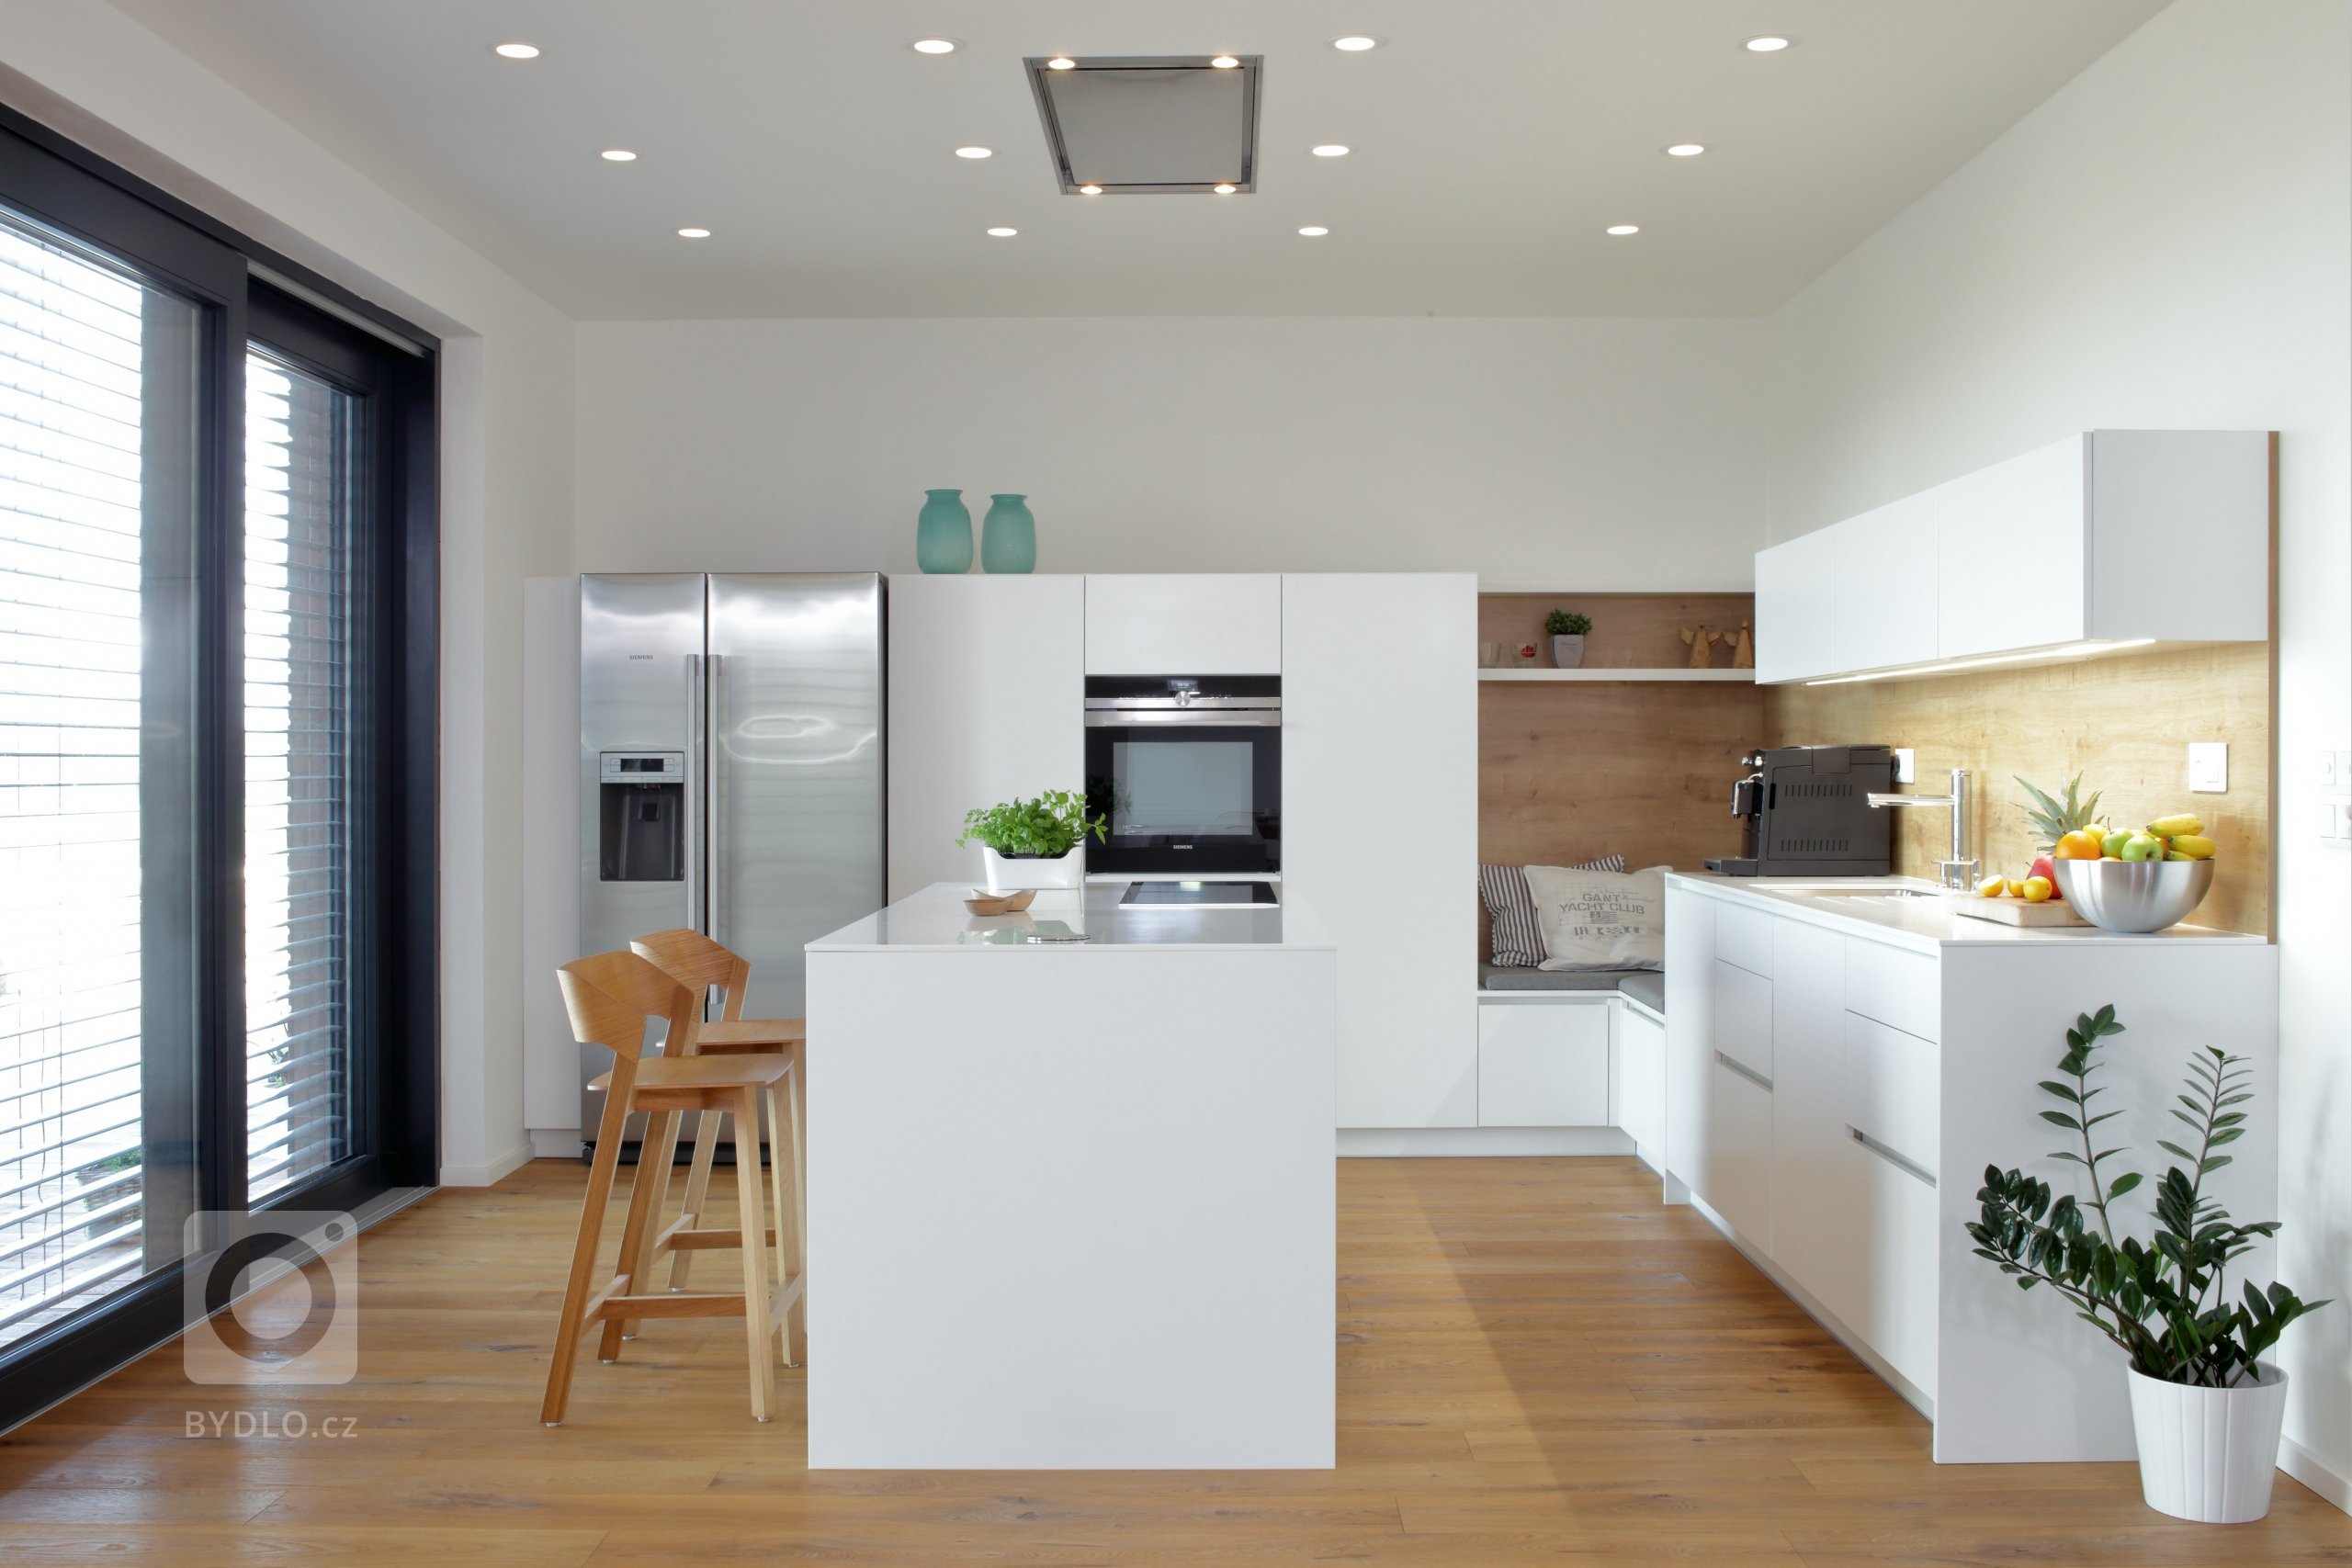 Elegantní, vzdušná, nadčasová &ndash; tak by se dala charakterizovat kuchyň v&nbsp;přízemní novostavbě rodinného domu u Pardubic.

Kuchyň je prostorná,…